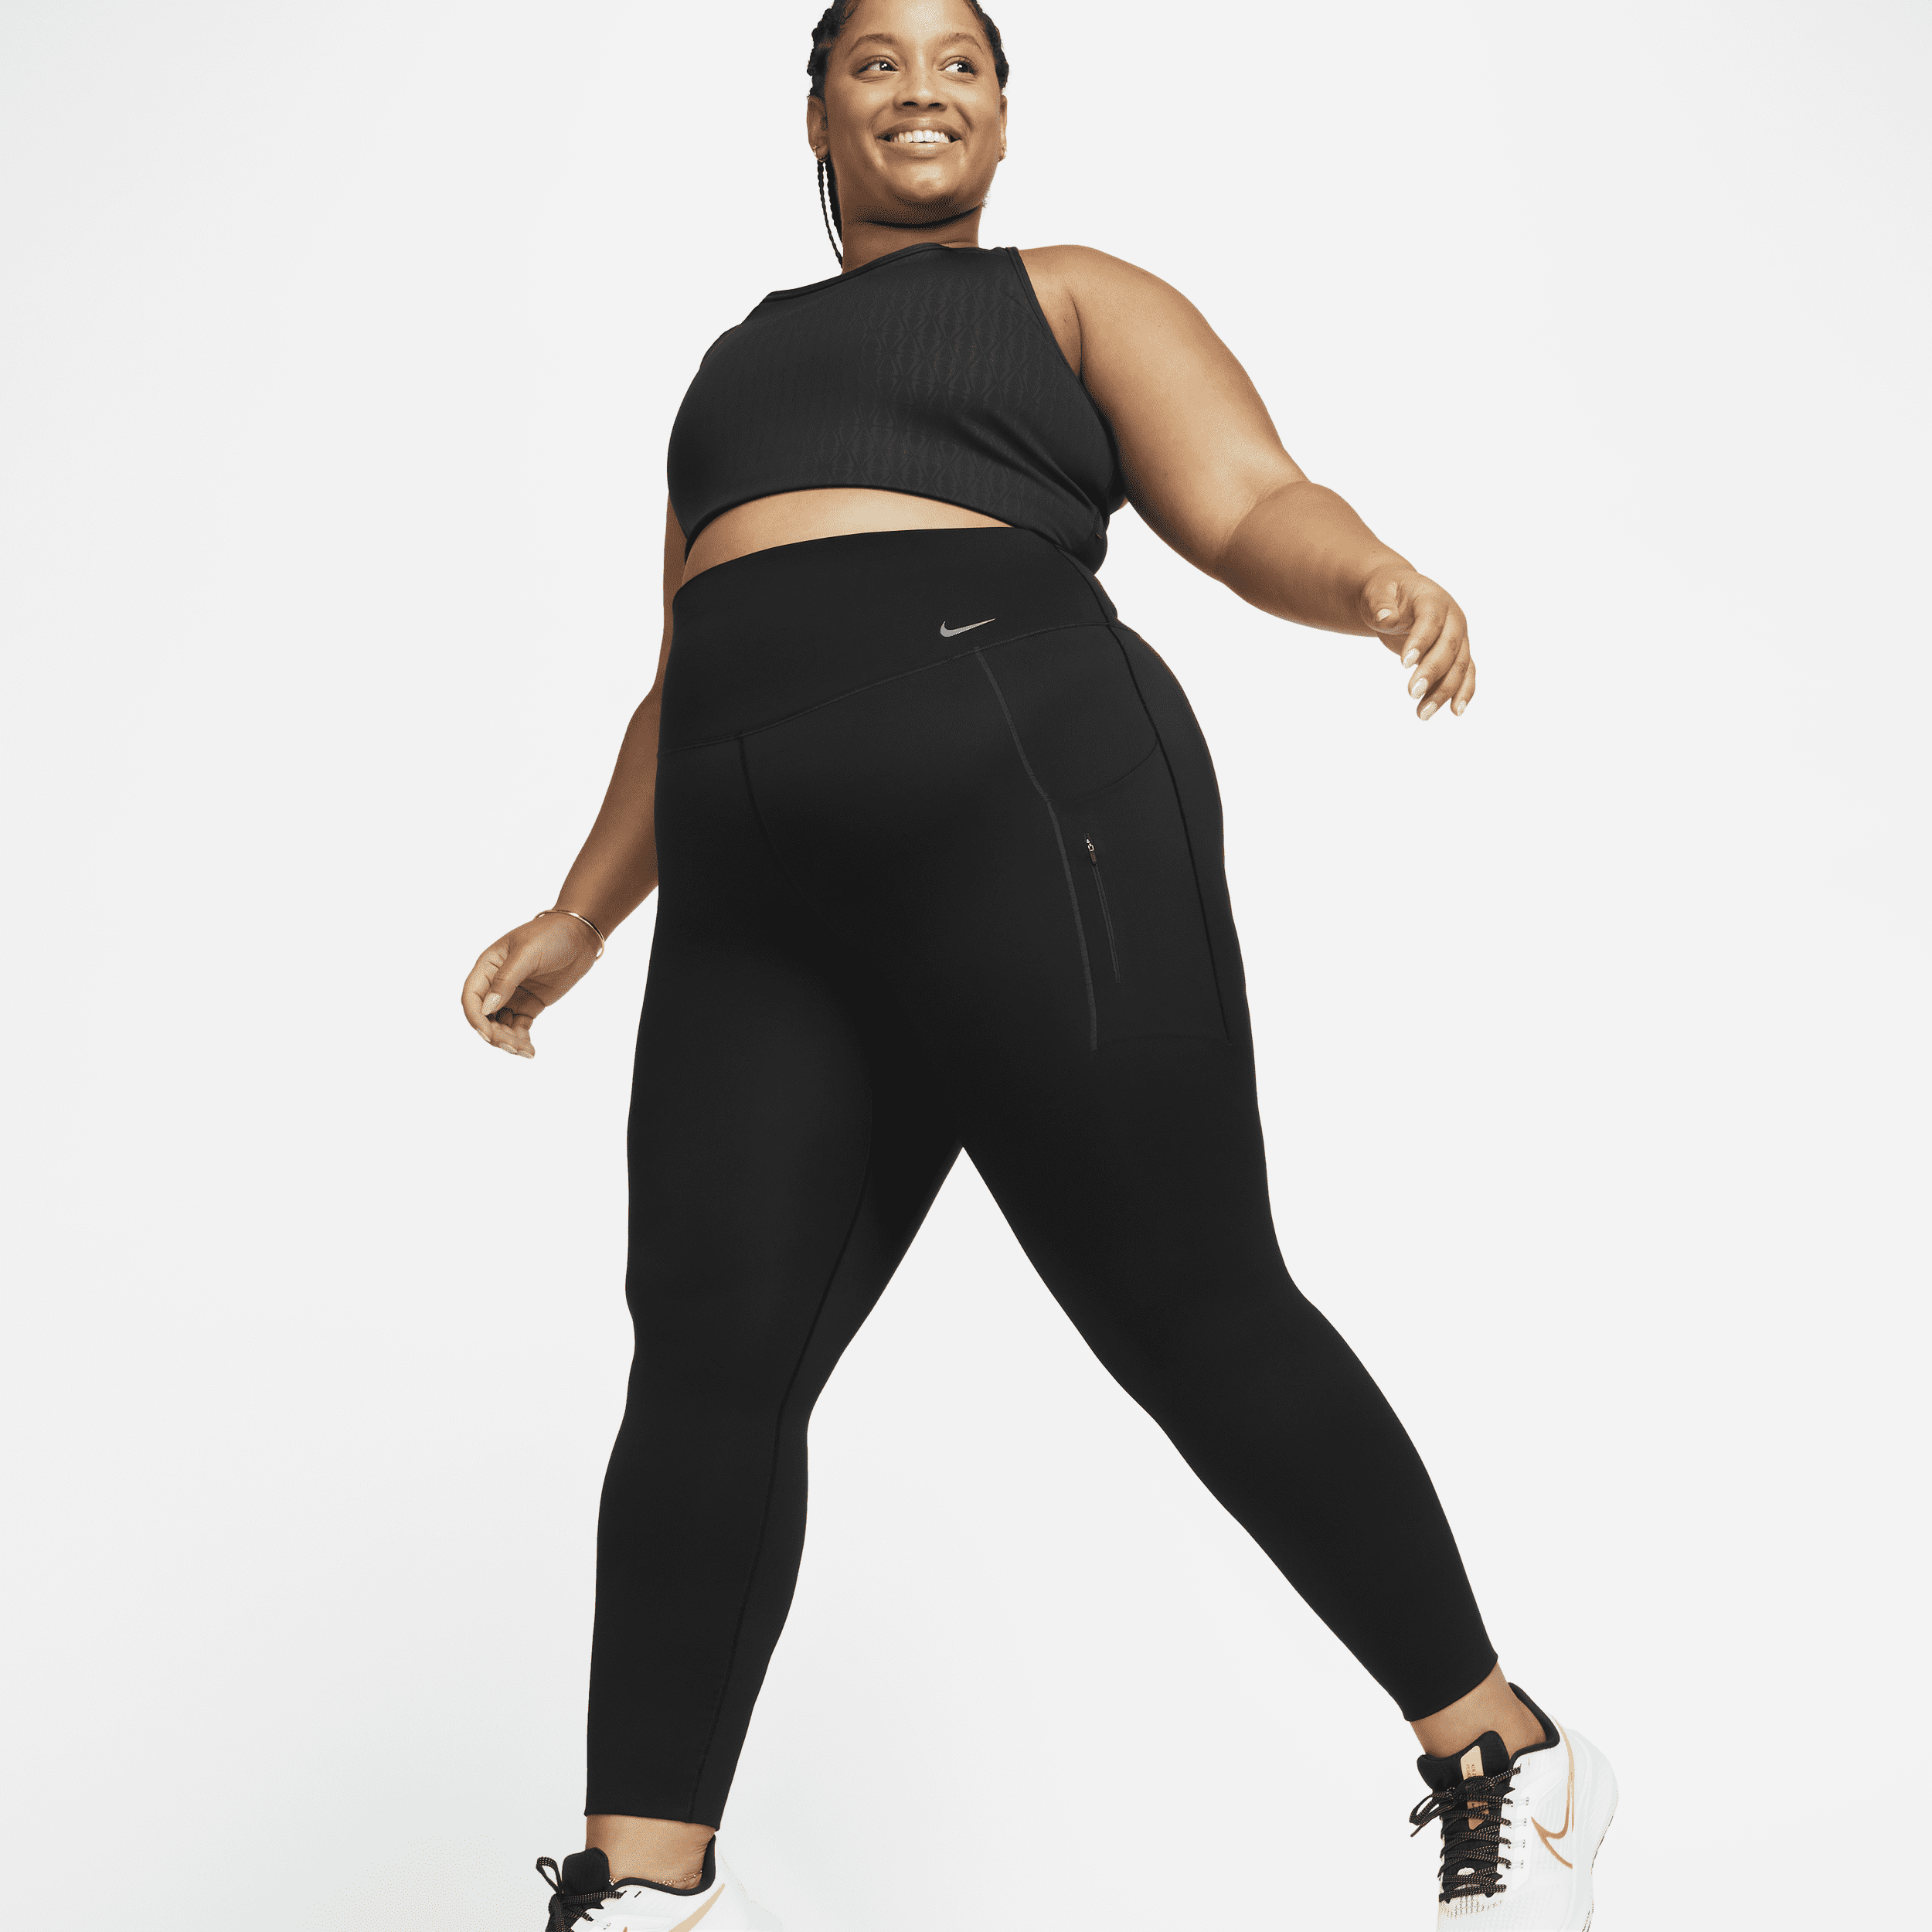 Leggings a tutta lunghezza a vita alta con tasche e sostegno elevato Nike Go – Donna - Nero